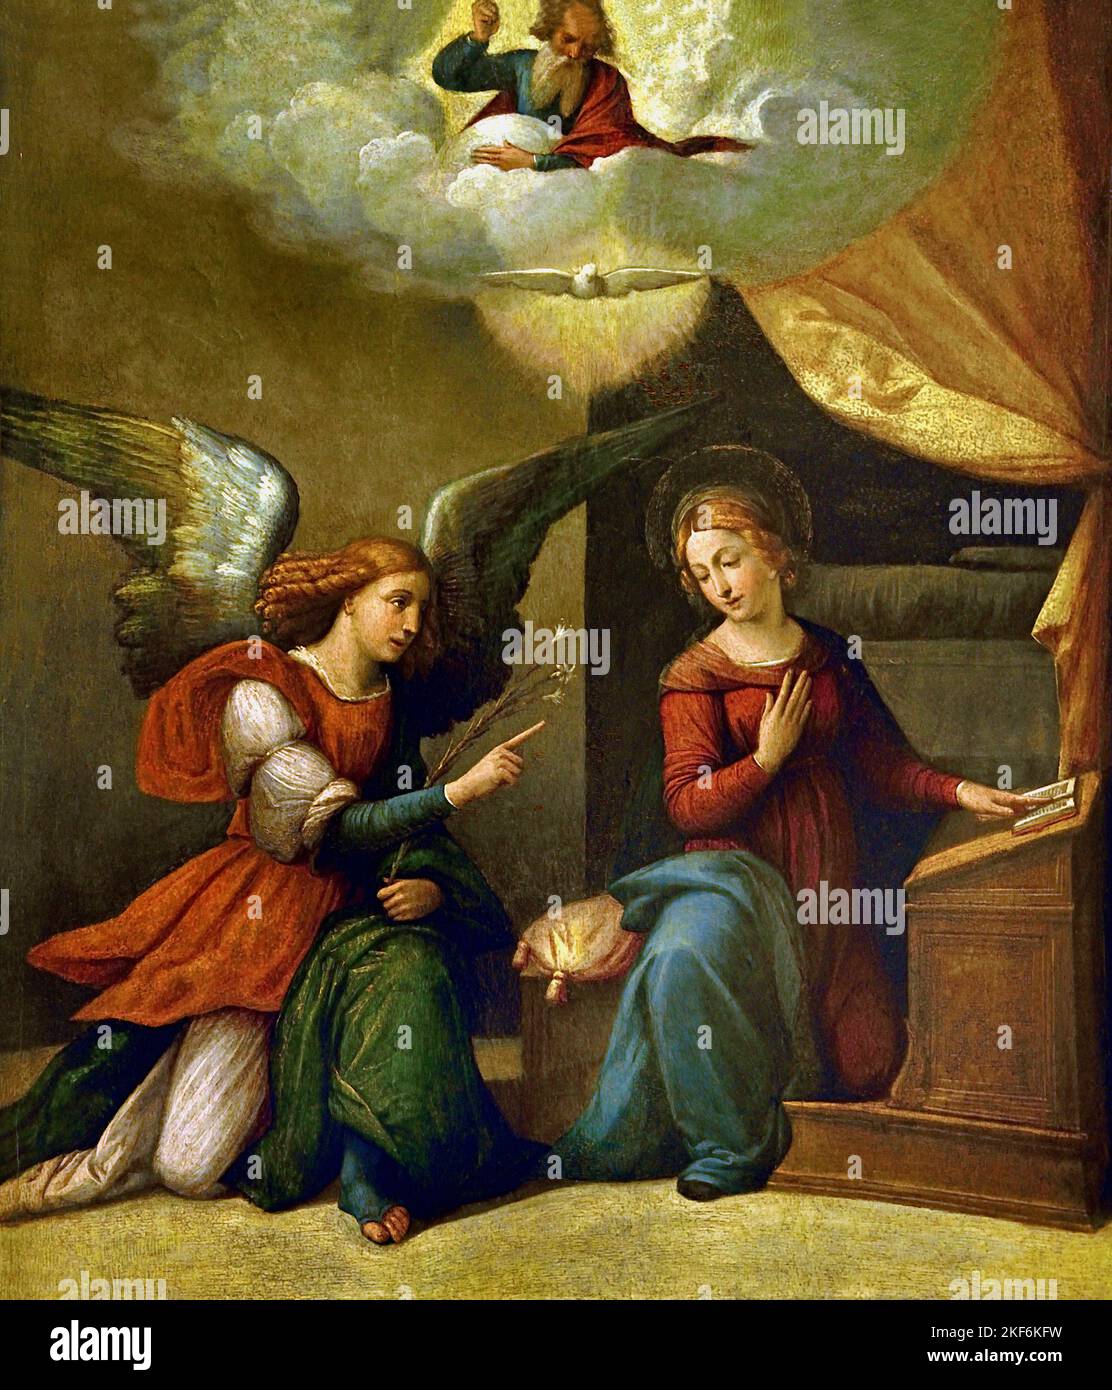 Verkündigung - Öl auf Tafel 1520 - 1530, Garofalo-Werkstatt Garofalo - Benvenuto Tisi (oder Il Garofalo) (1481 – 1559 Italien Italienische Verkündigung, stellt die biblische Geschichte dar, in der Erzengel Gabriel der Jungfrau Maria verkündet, dass sie zur Mutter Jesu, Geburt Christi, auserwählet wurde, Stockfoto